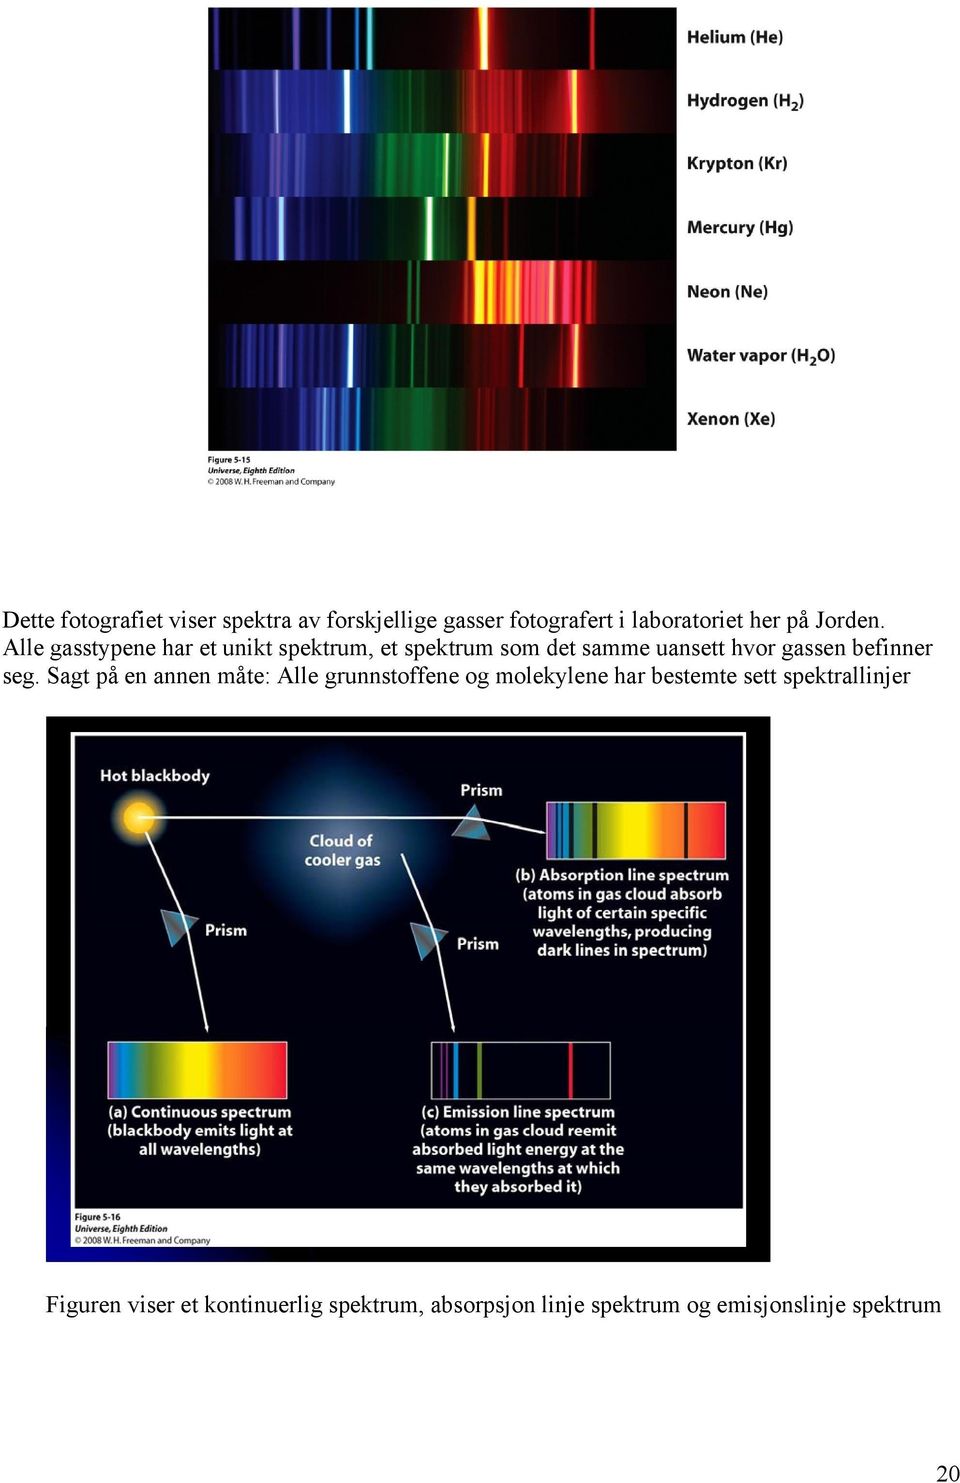 Alle gasstypene har et unikt spektrum, et spektrum som det samme uansett hvor gassen befinner